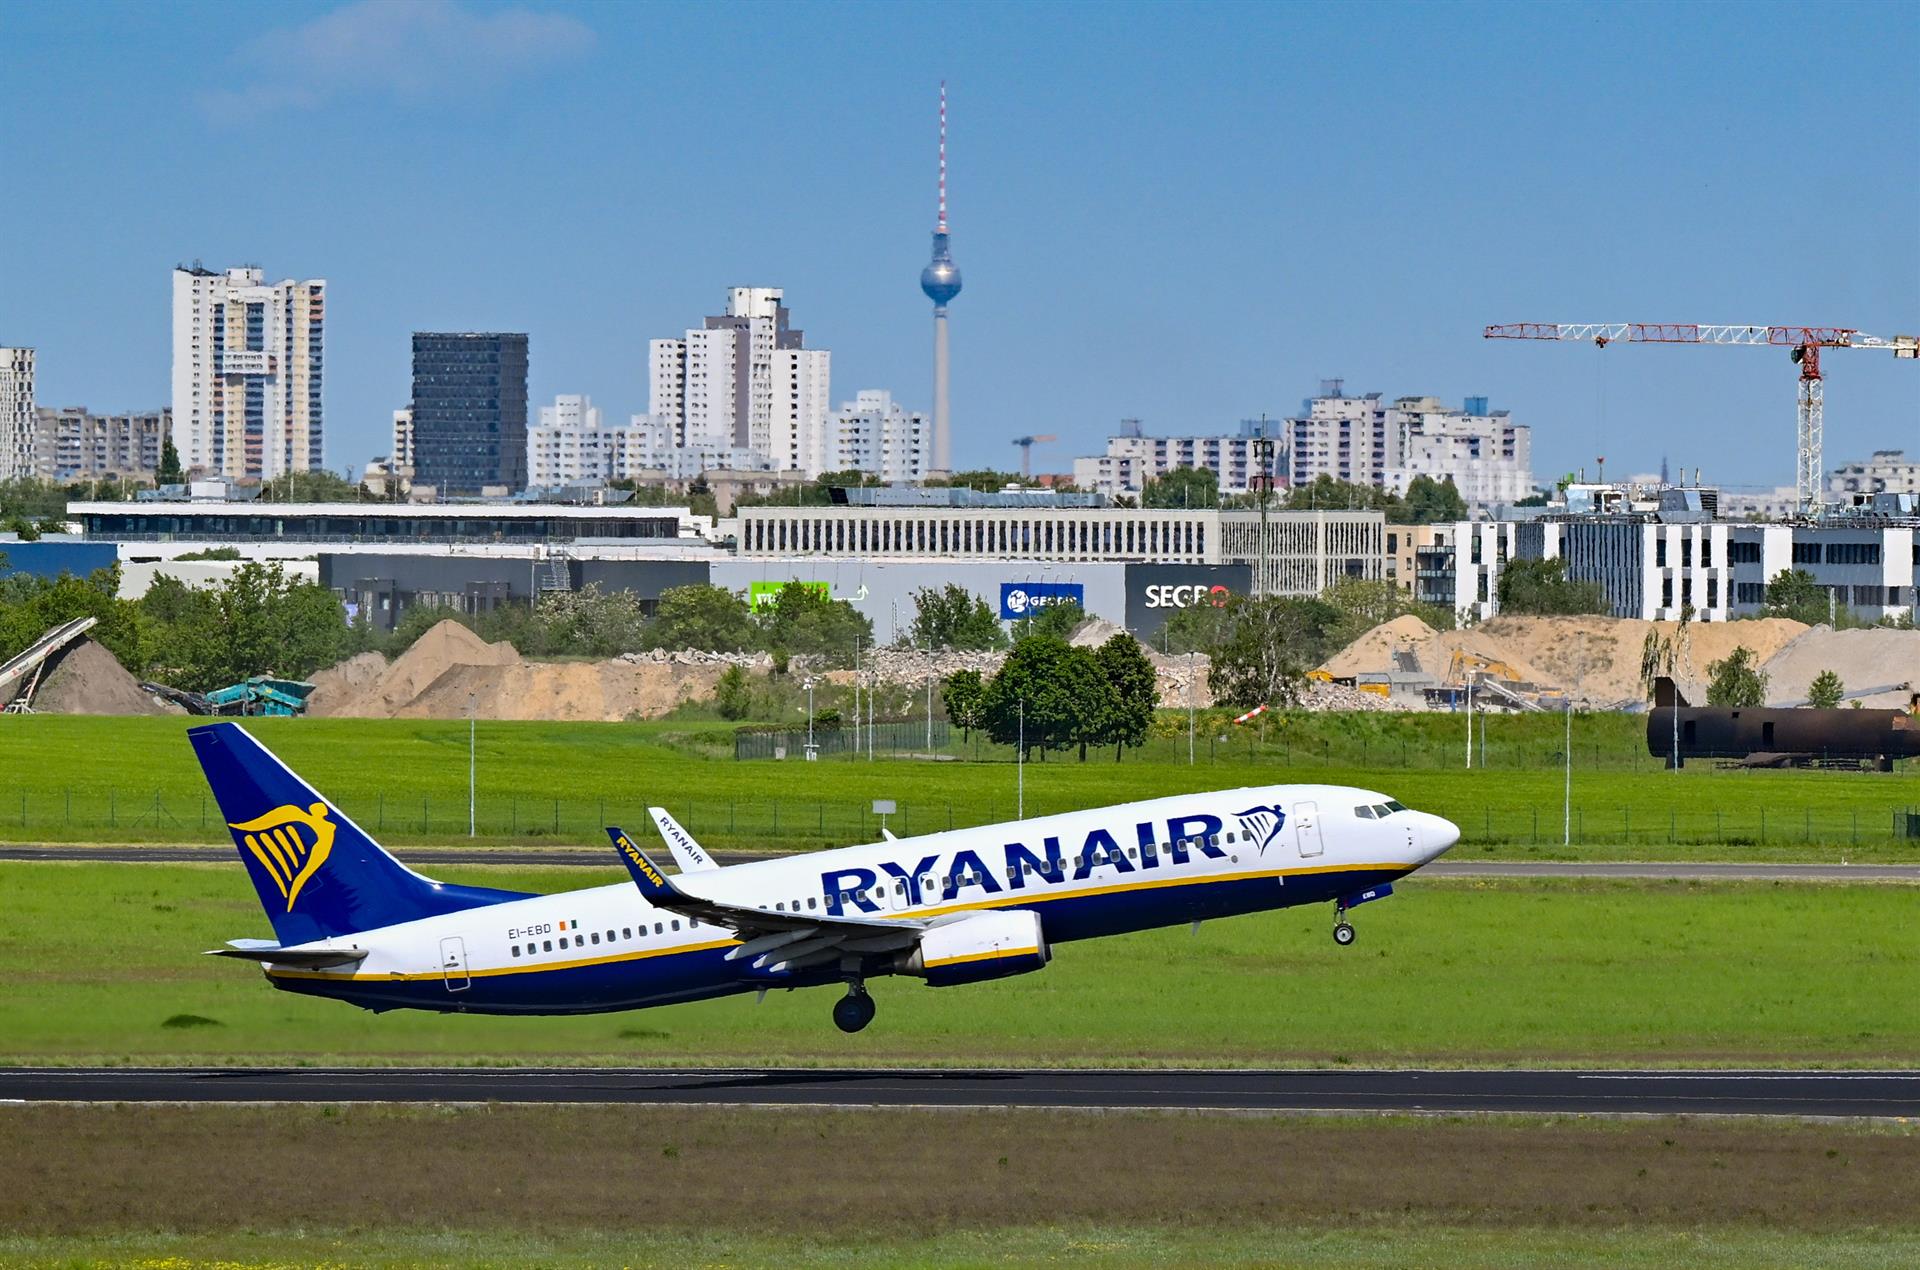 Multa de 150 millones a Ryanair, EasyJet, Vueling y Volotea por cobrar el equipaje de mano. Foto: Patrick Pleul/dpa.